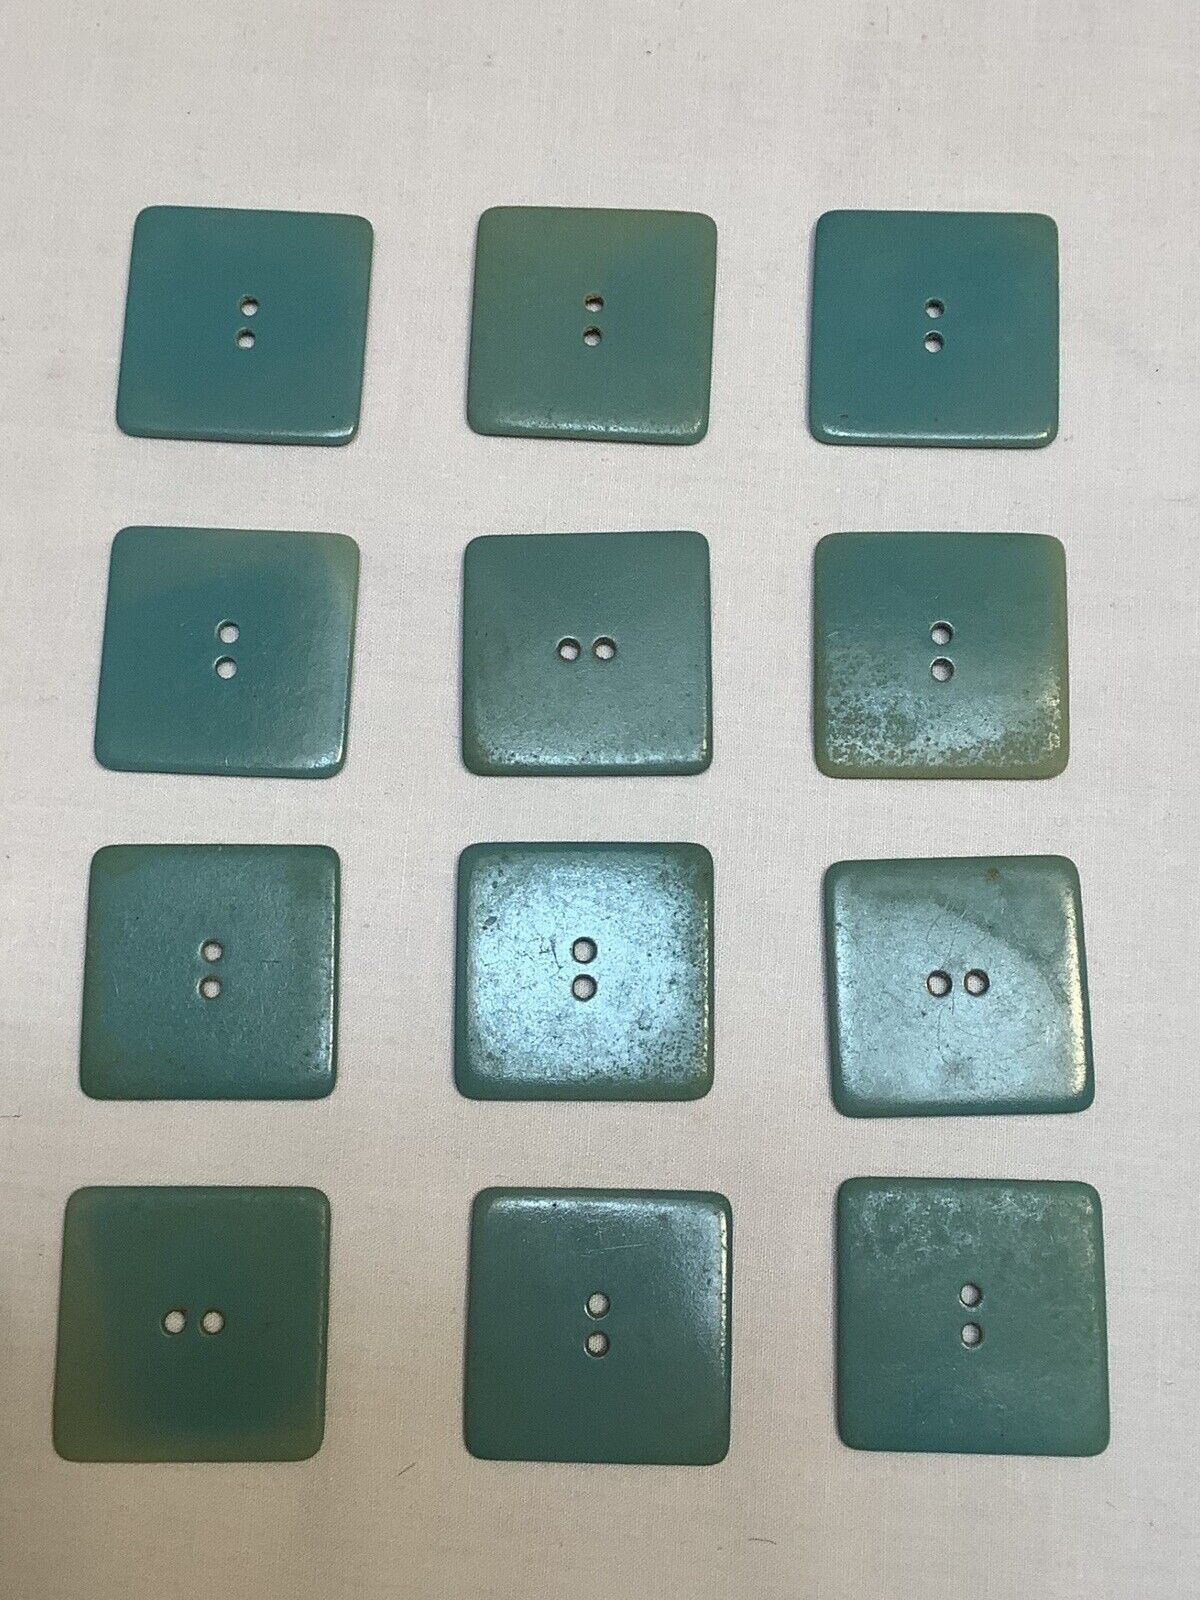 VTG 1930-40’ Plastic Buttons. Lot of 12 pcs Aqua Blue Plastic Vintage Buttons